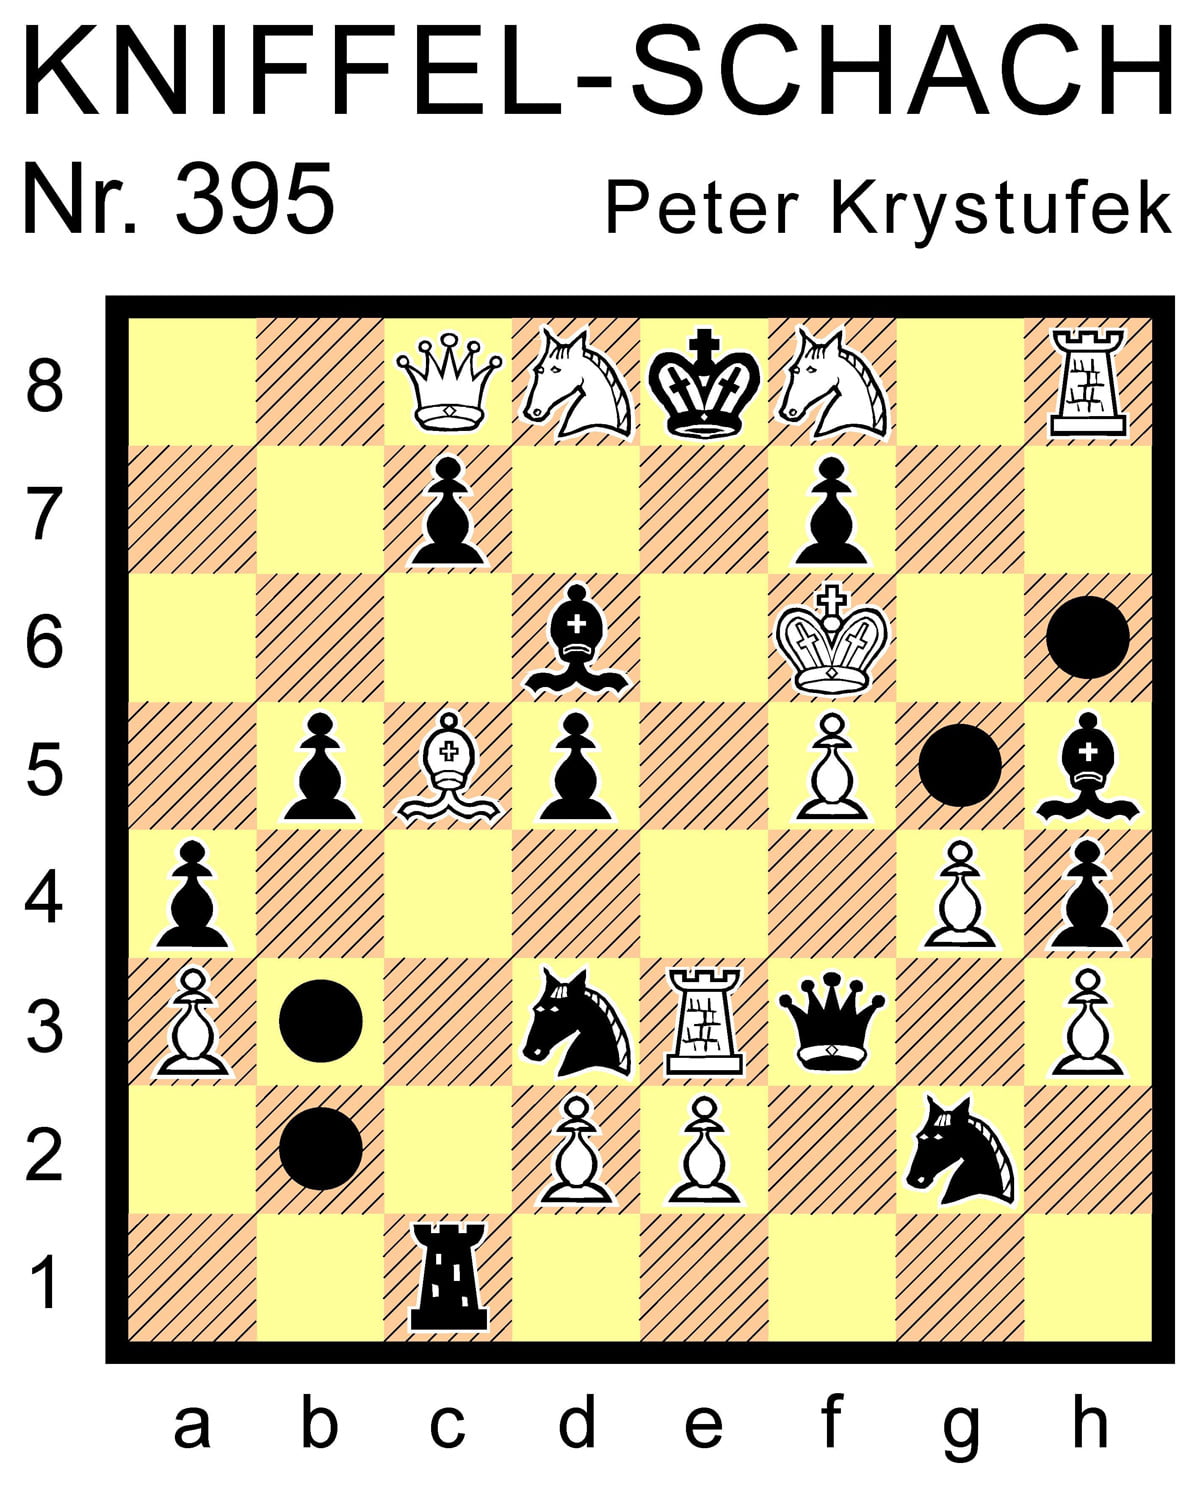 Kniffel-Schach Nr. 395